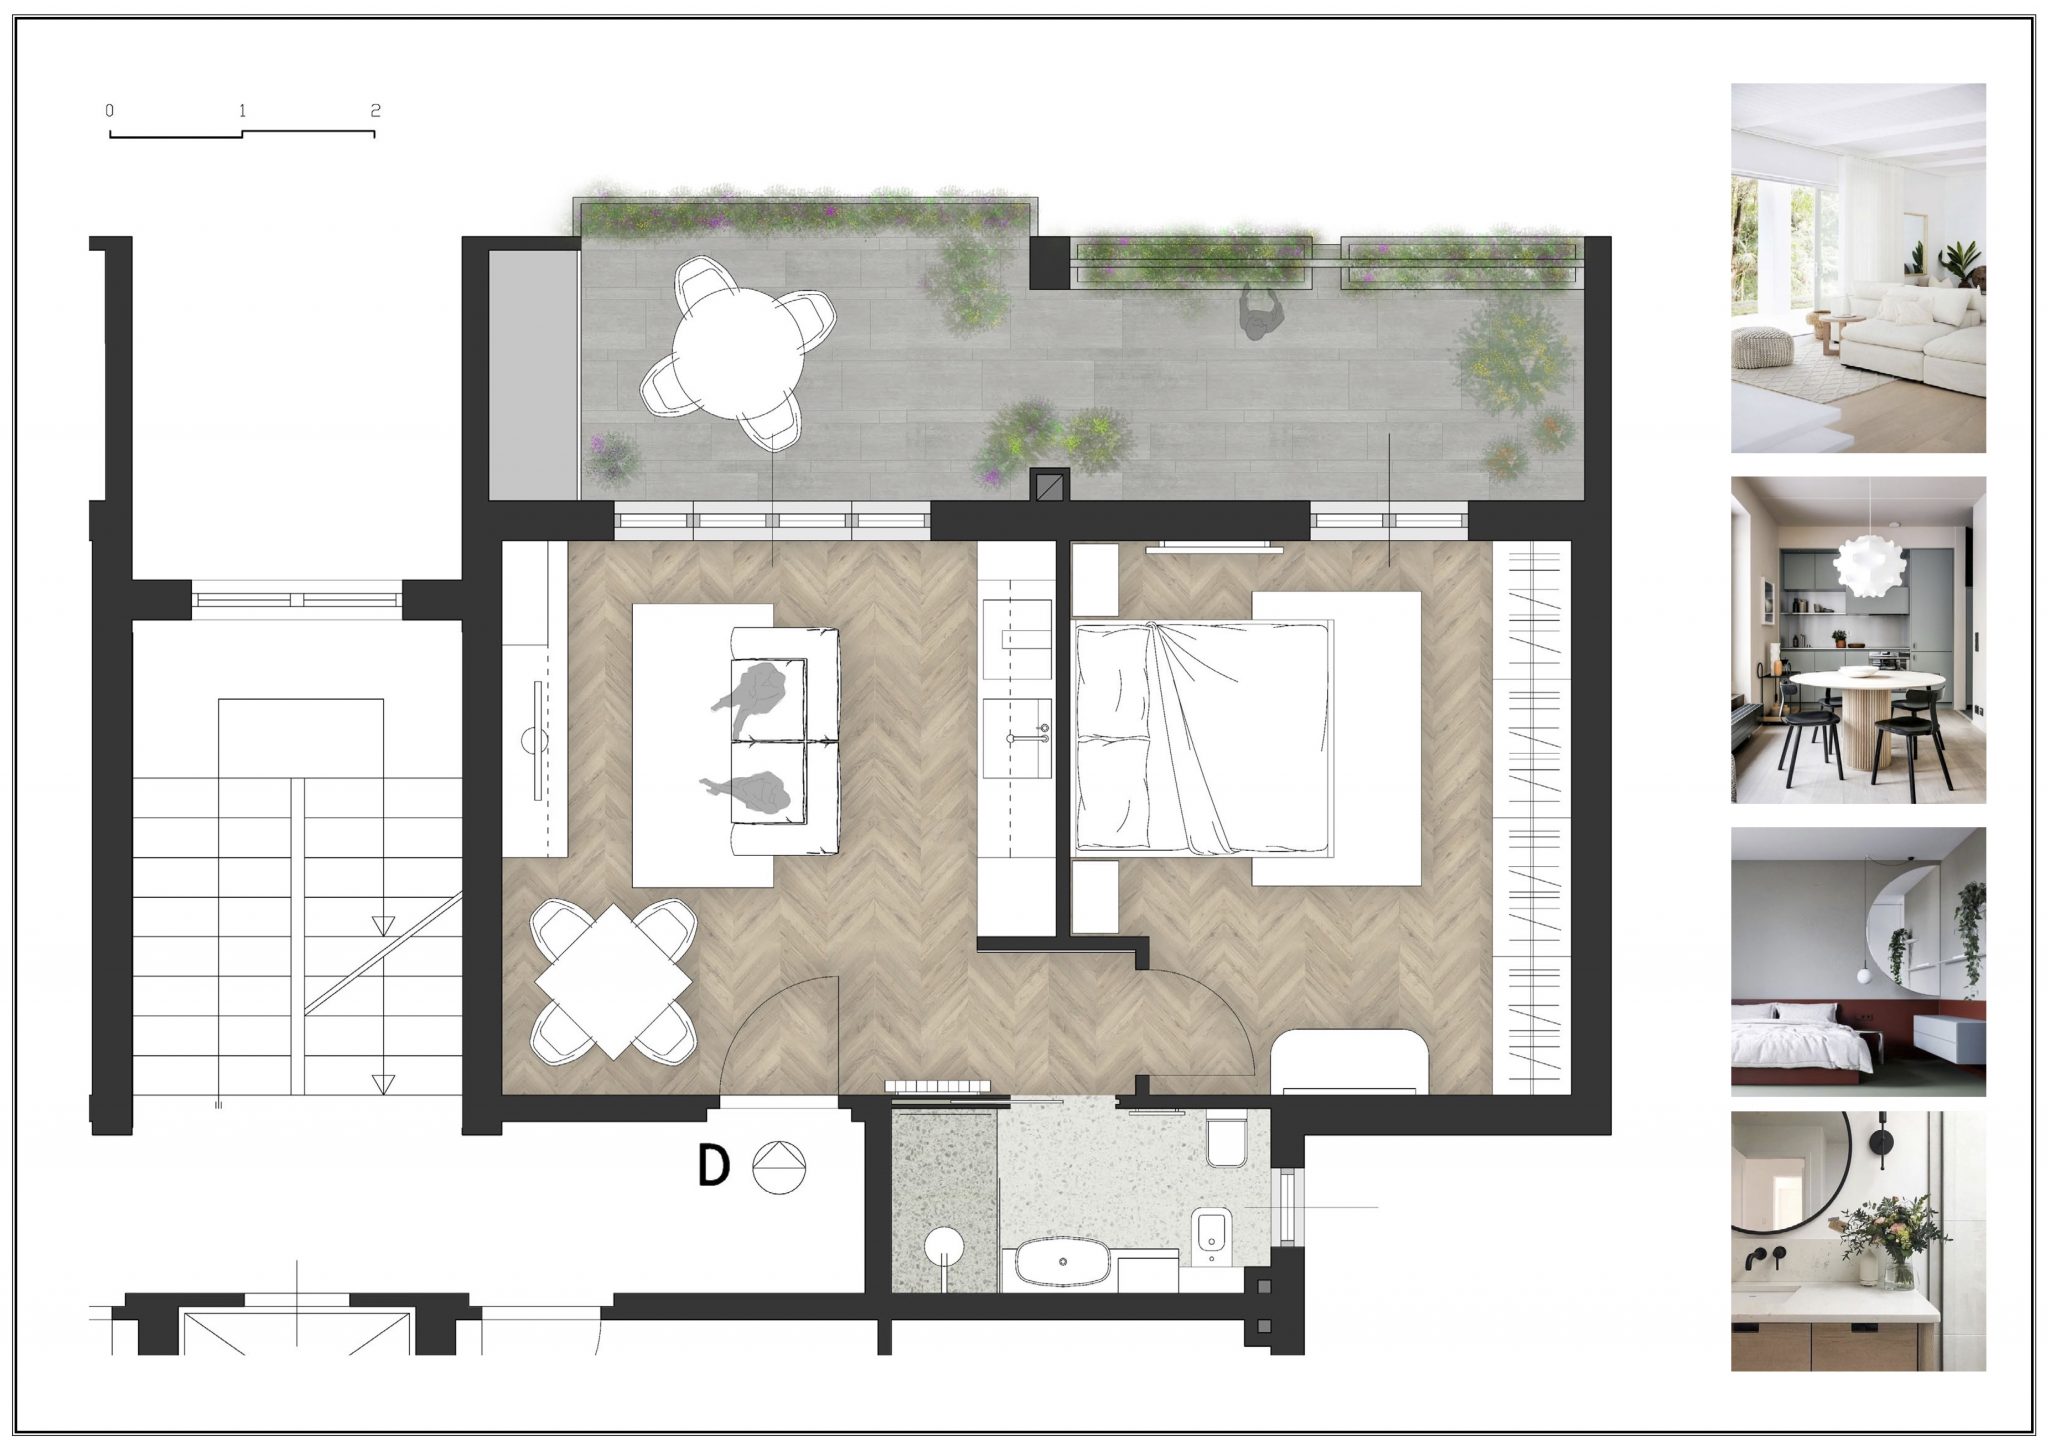 Grundriss und Darstellung einer 59qm Wohnung mit Terrasse, die über den gesamten Wohnbereich zugänglich ist.